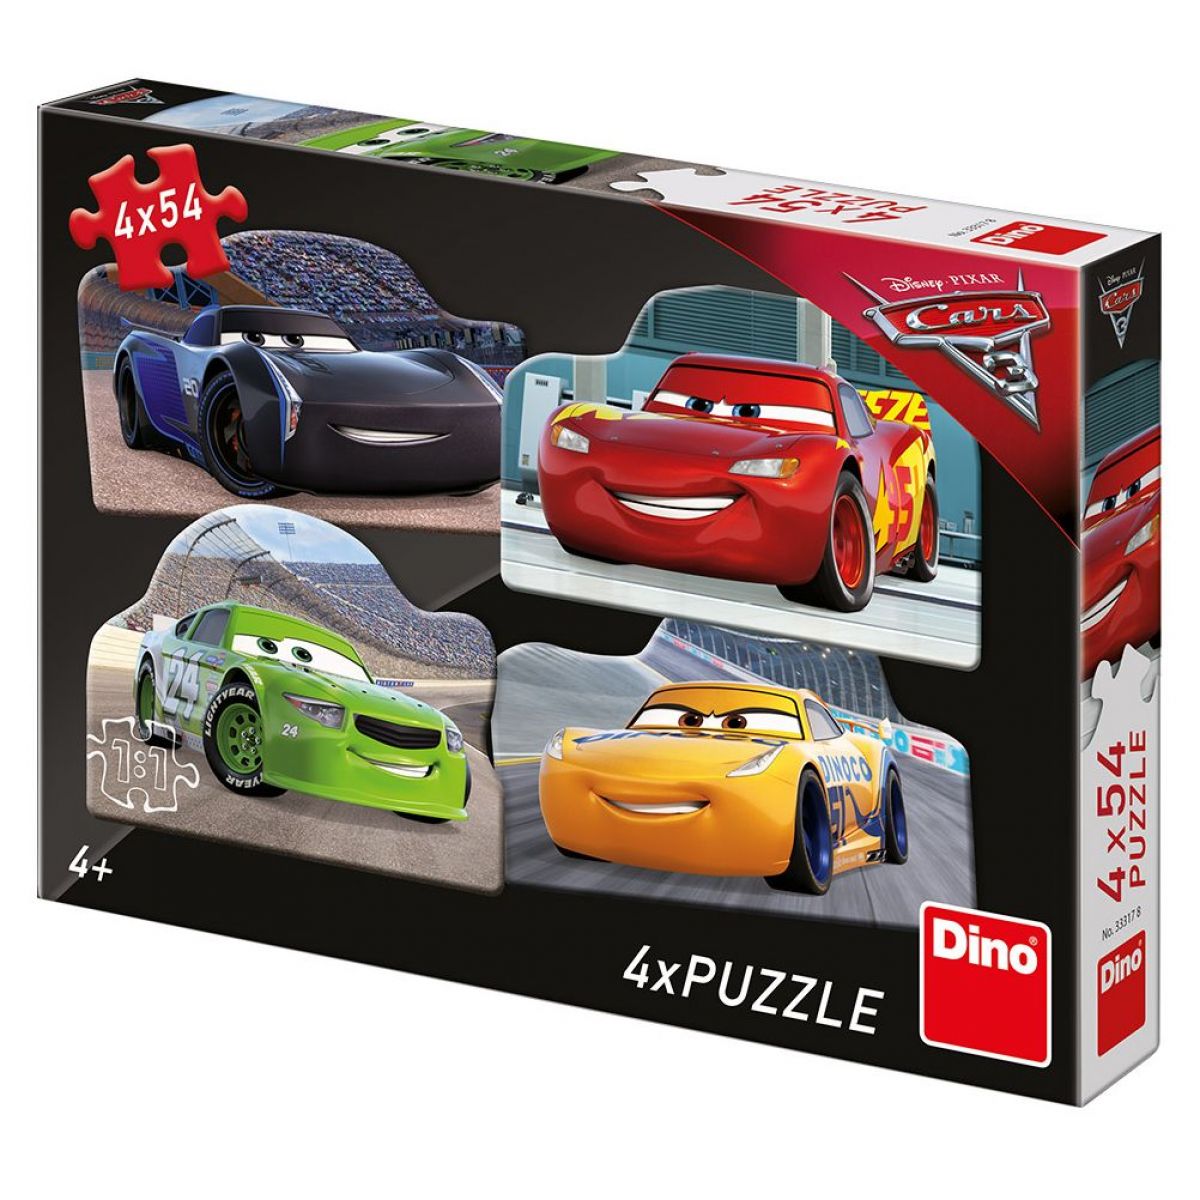 Dino Disney Cars 3 Rivali puzzle 4 x 54 dielikov